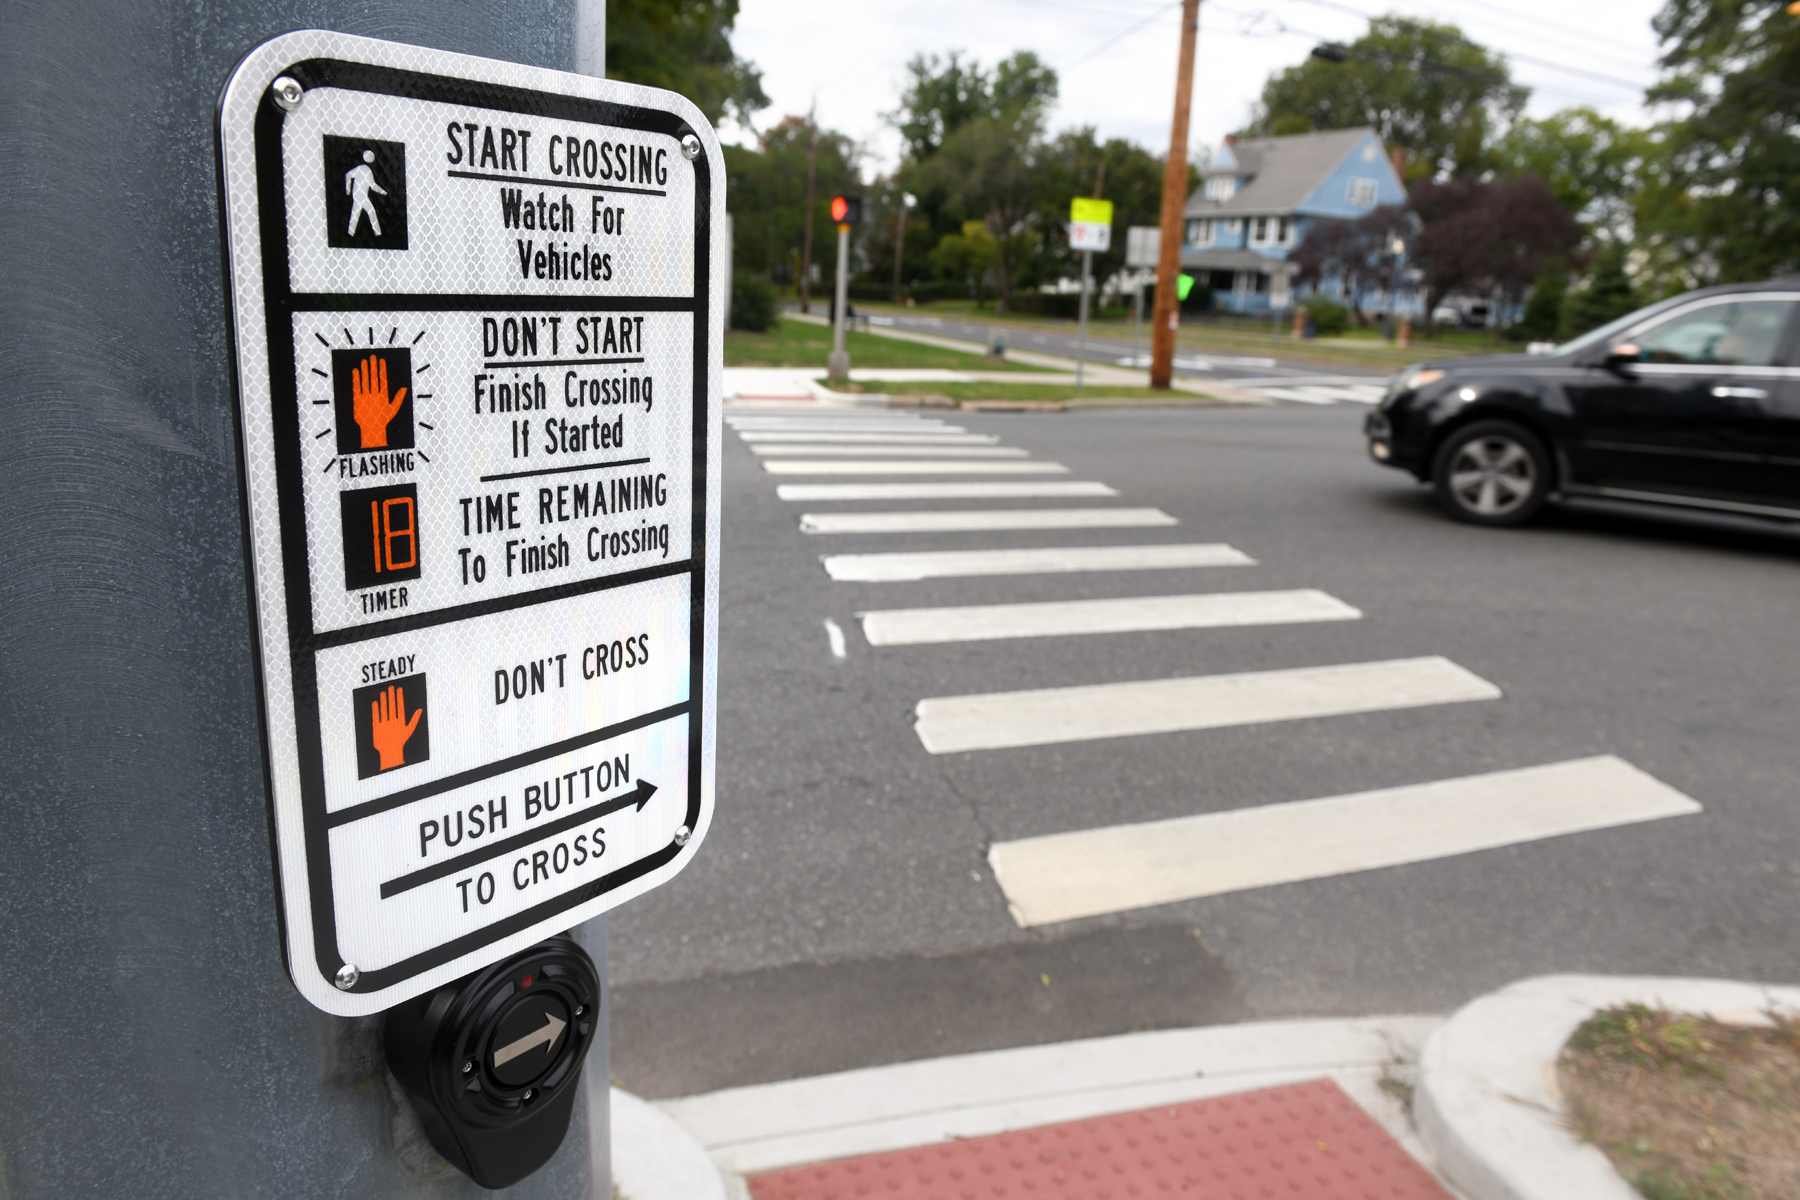 Safer for Pedestrians, Safer Crossing